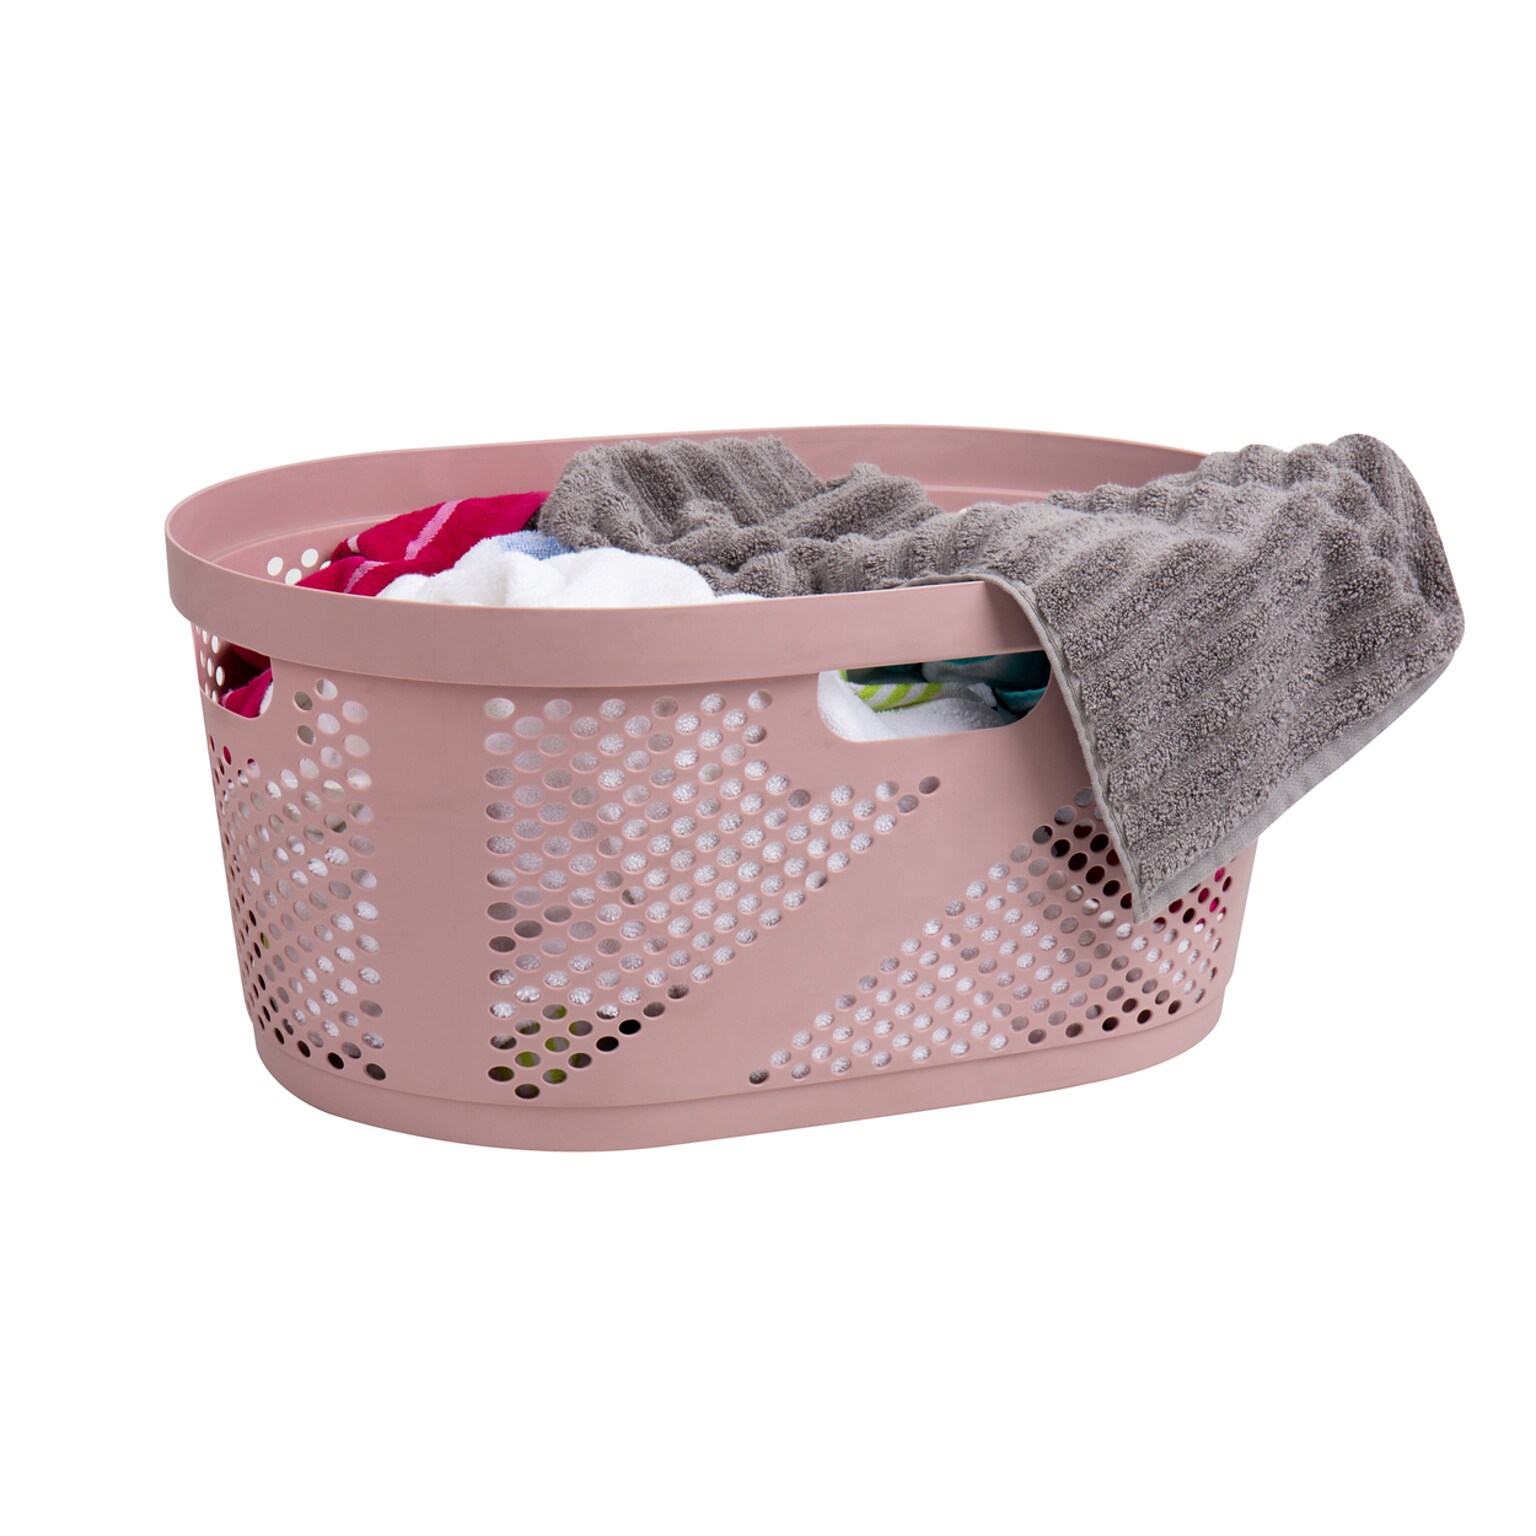 Mind Reader Wide Plastic Laundry Basket, Pink (HHAMP40-PNK)